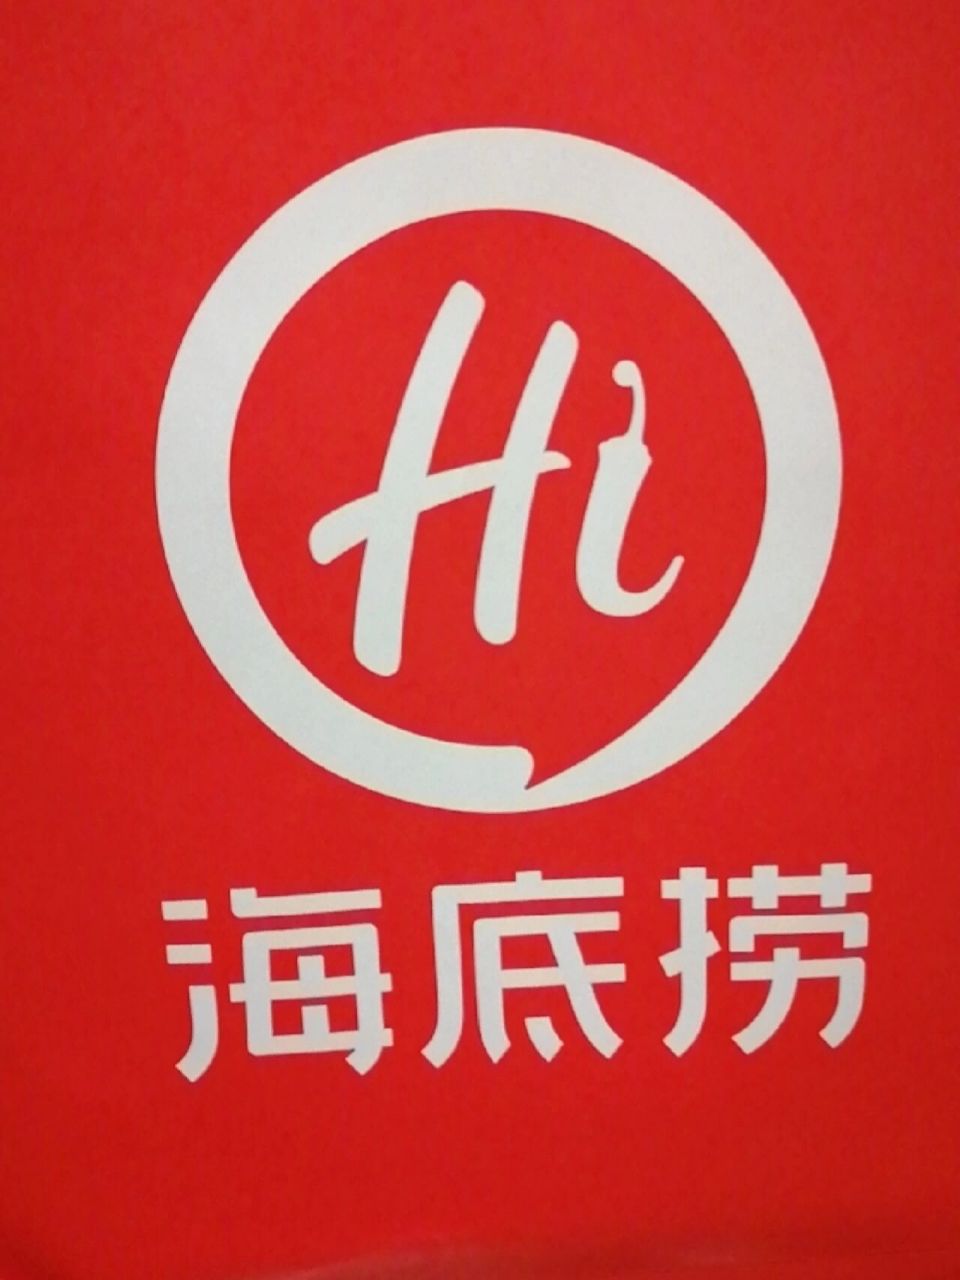 马云酒吧logo图片图片